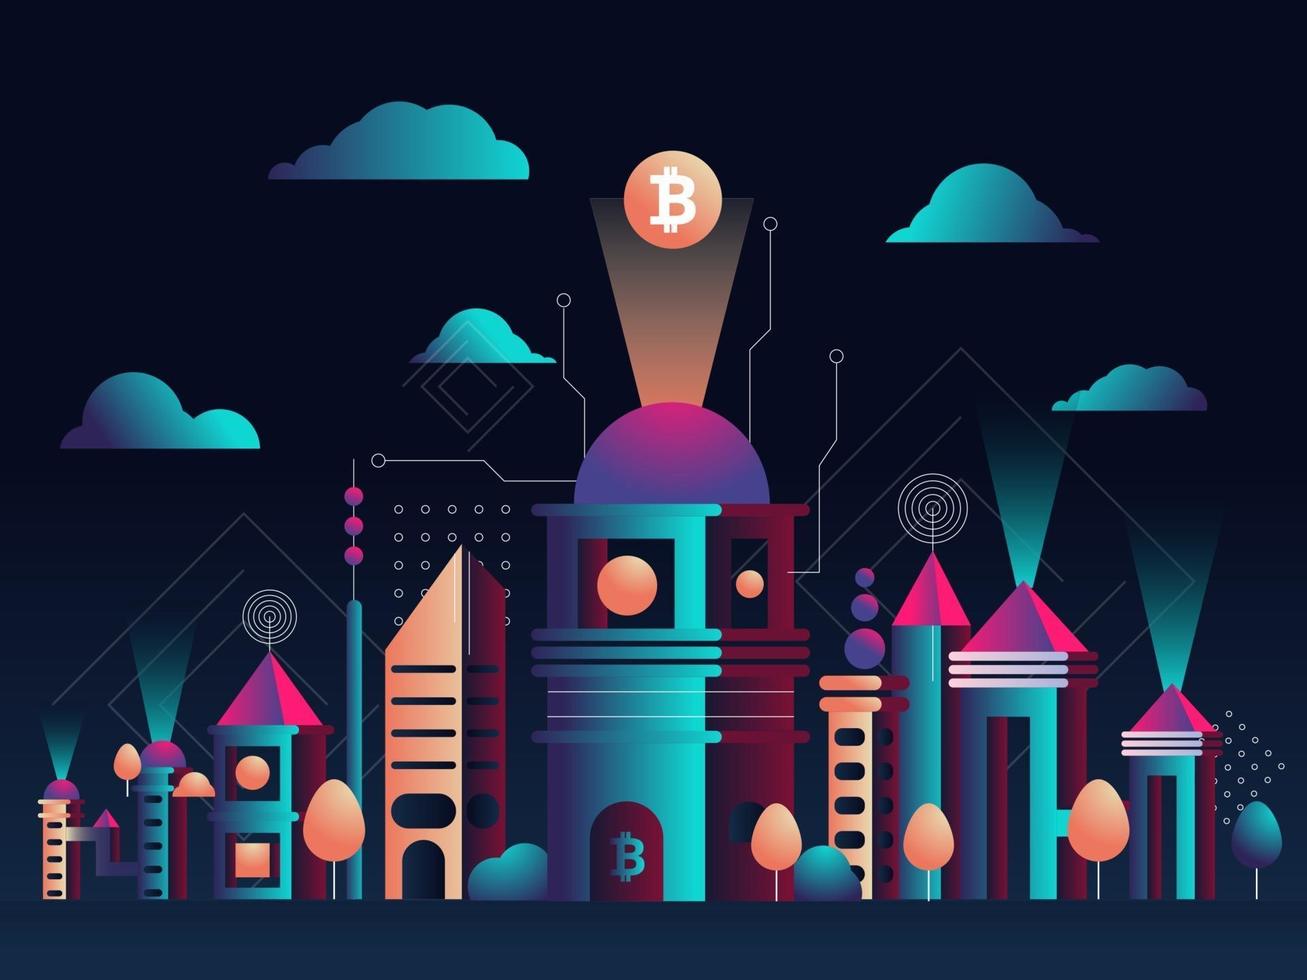 vector illustratie. futuristische stadsgezicht. de stad van de toekomst. een symbool van bitcoin en blockchain. geometrische vormen en memphis-stijl. nachtelijke hemel met wolken achtergrond